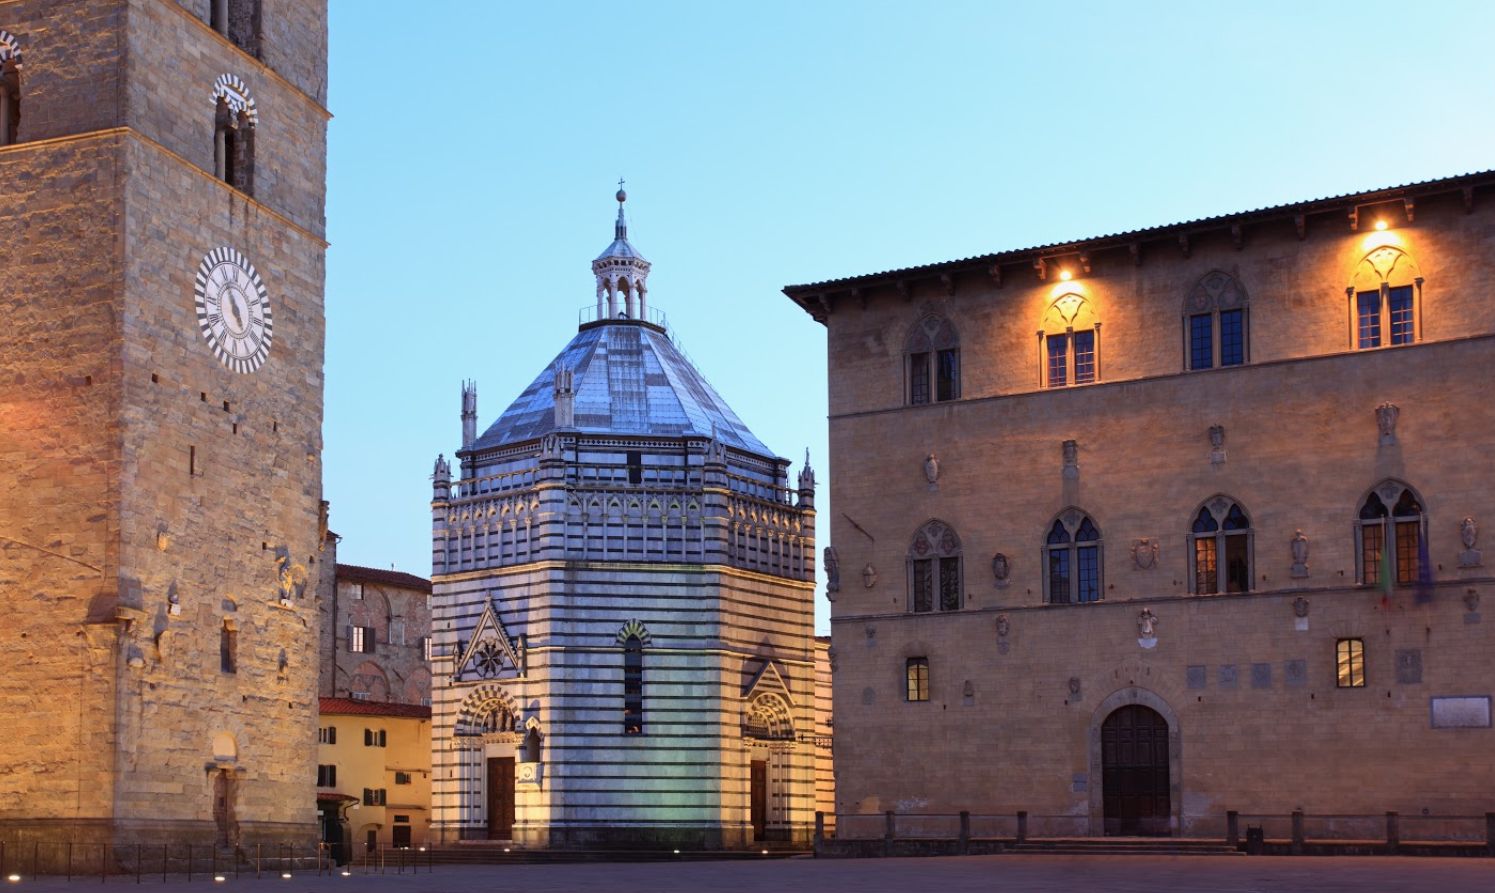 Clocher et baptistère sur la Piazza del Duomo de Pistoia, Toscane - Italie